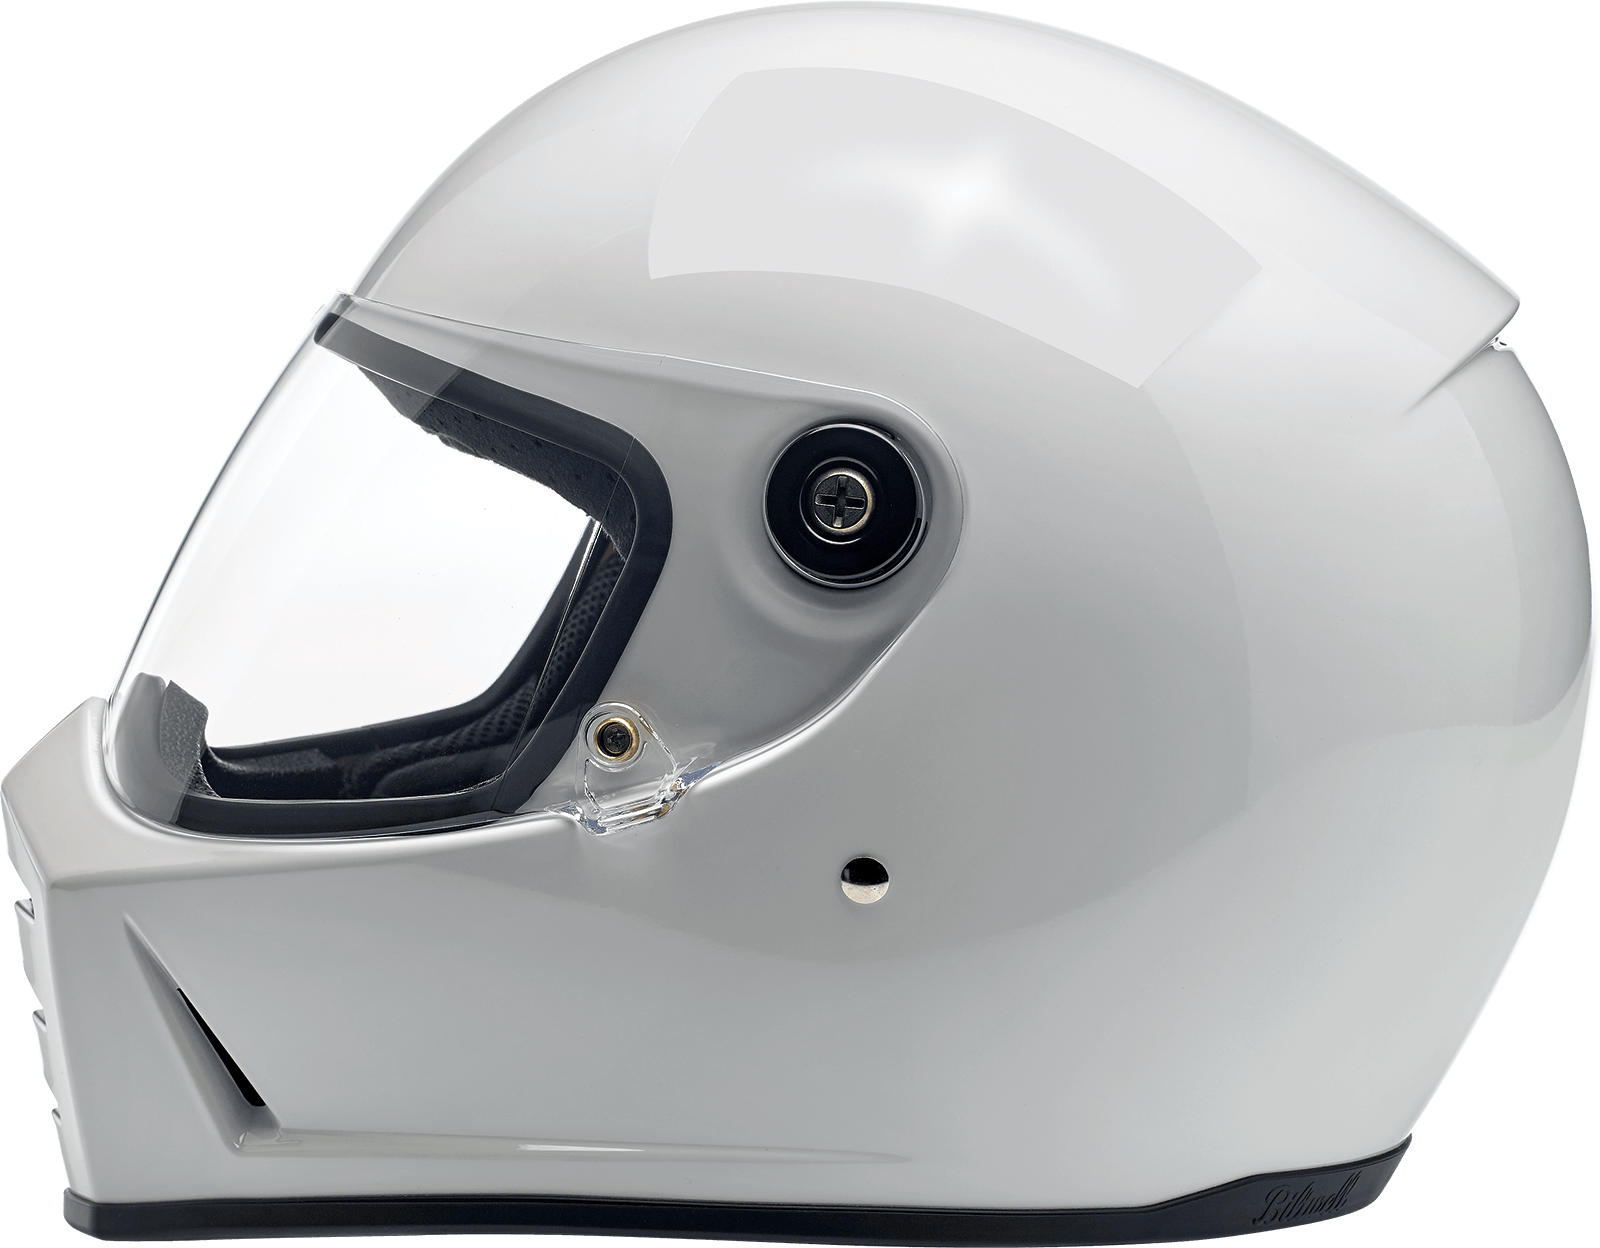 BILTWELL-Lane Splitter Helmets / Gloss Black-Helmet-MetalCore Harley Supply